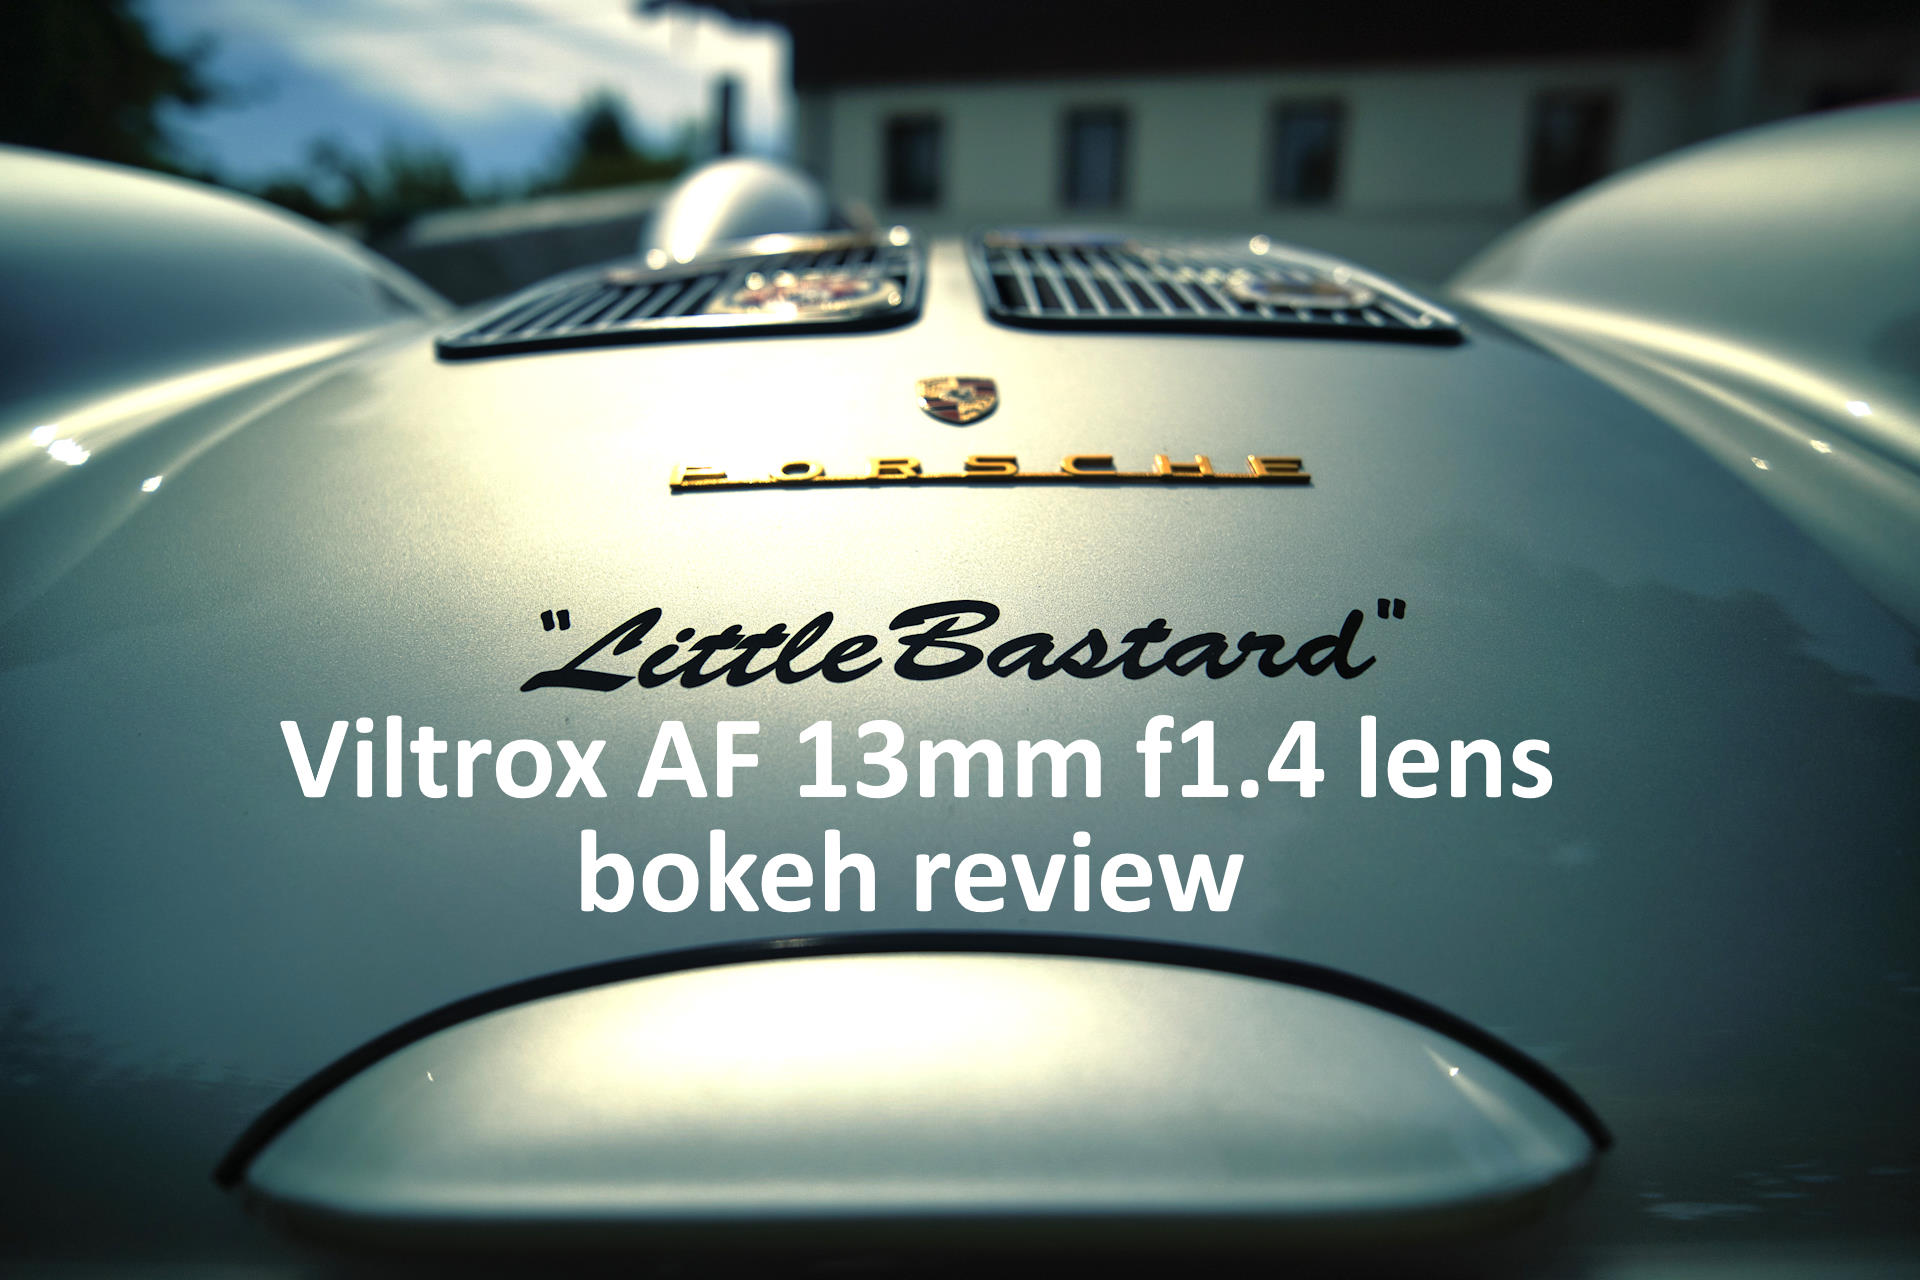 Viltrox 13mm f1.4 lens